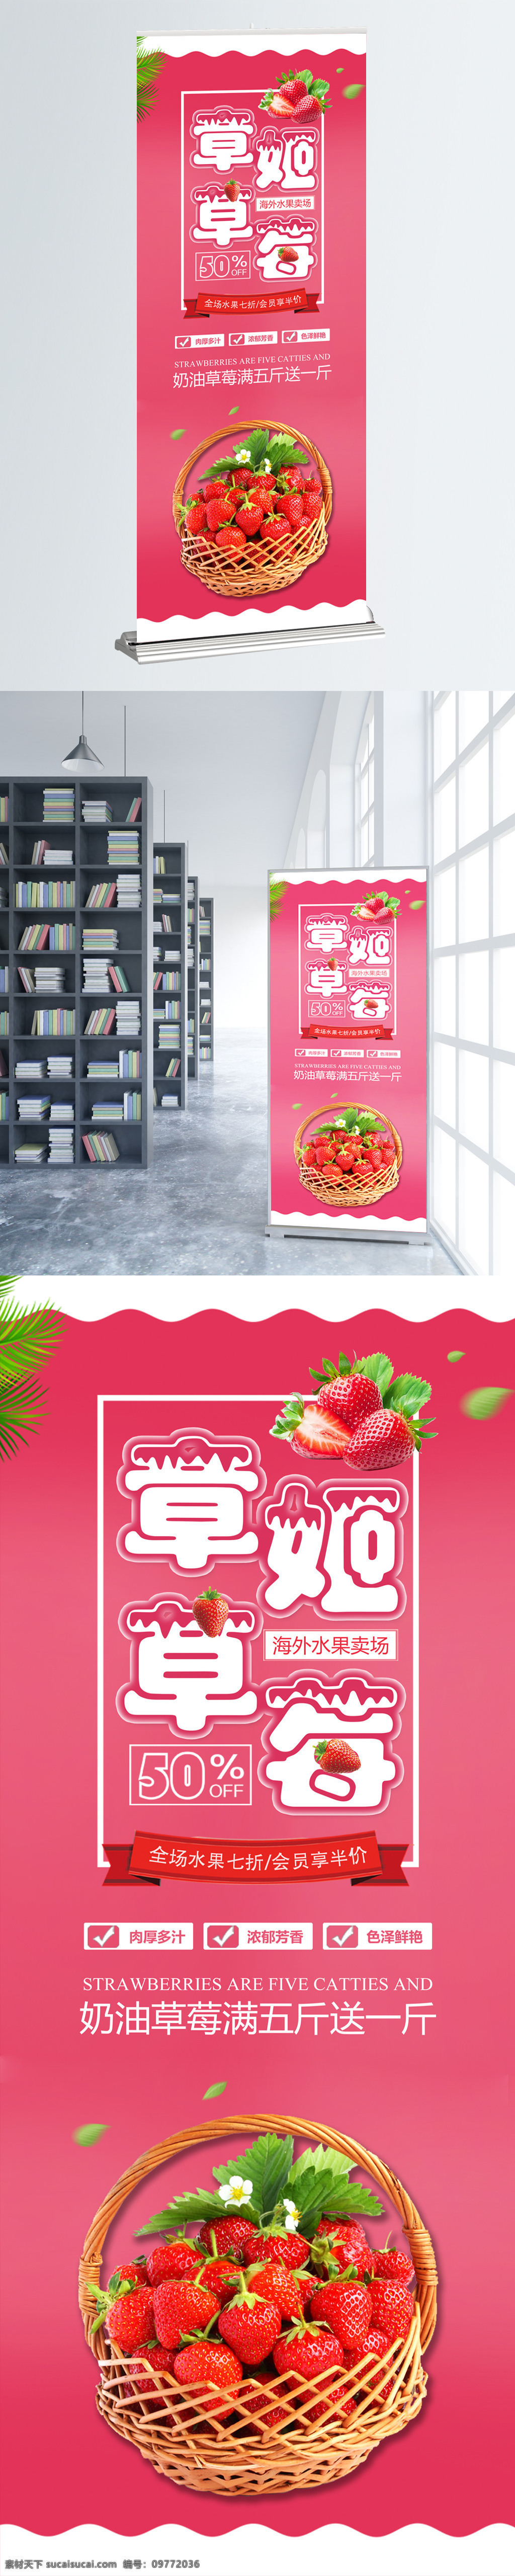 时尚 草莓 水果 促销 宣传 展架 草莓促销海报 草莓广告 草莓展架 奶油草莓 易拉宝 水果展架 现摘草莓